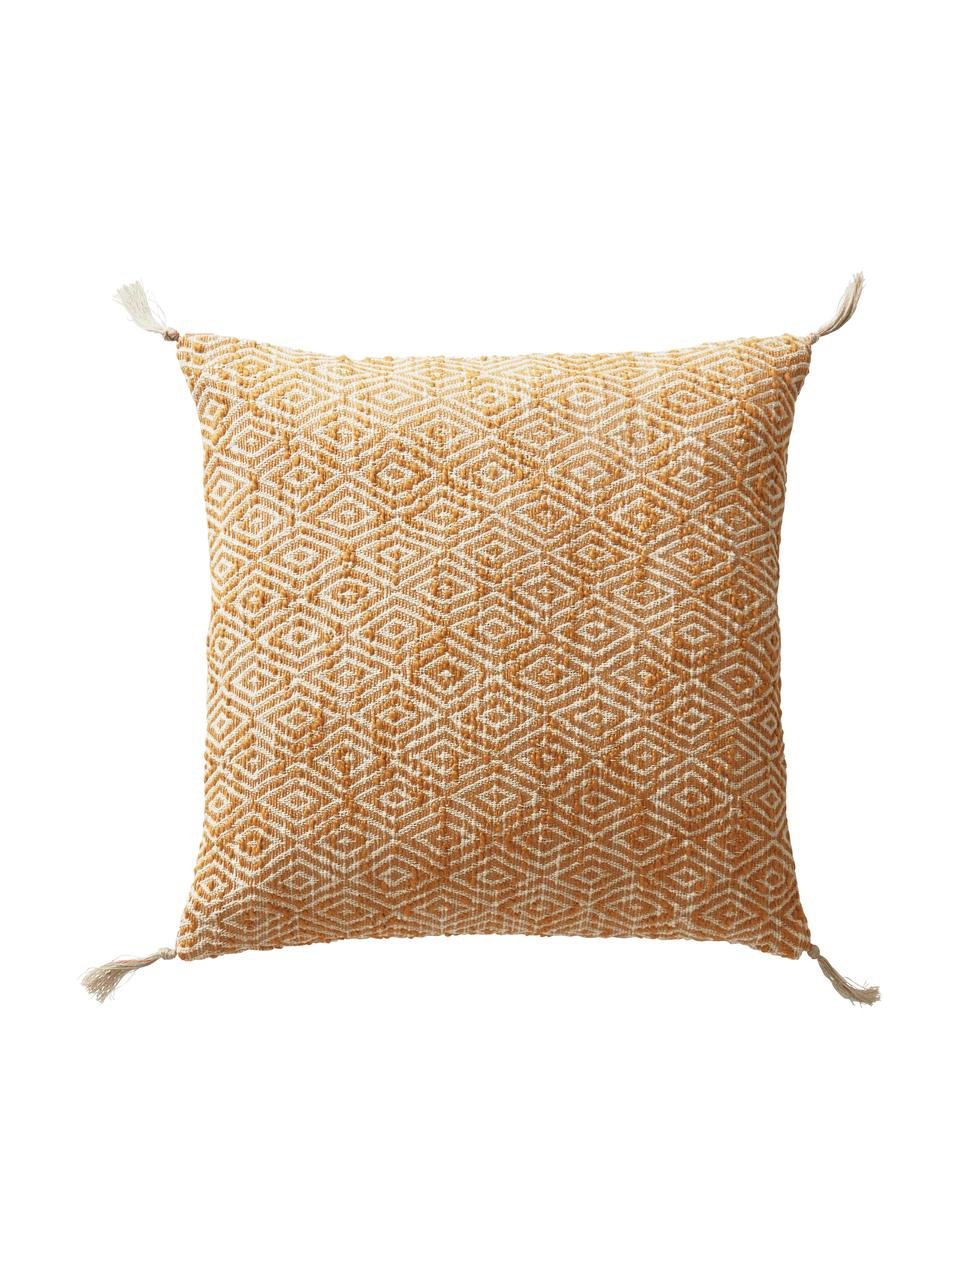 Komplet poszewek na poduszkę z chwostami Fancy, 2 elem., 100% bawełna, Żółty, złamana biel, S 45 x D 45 cm